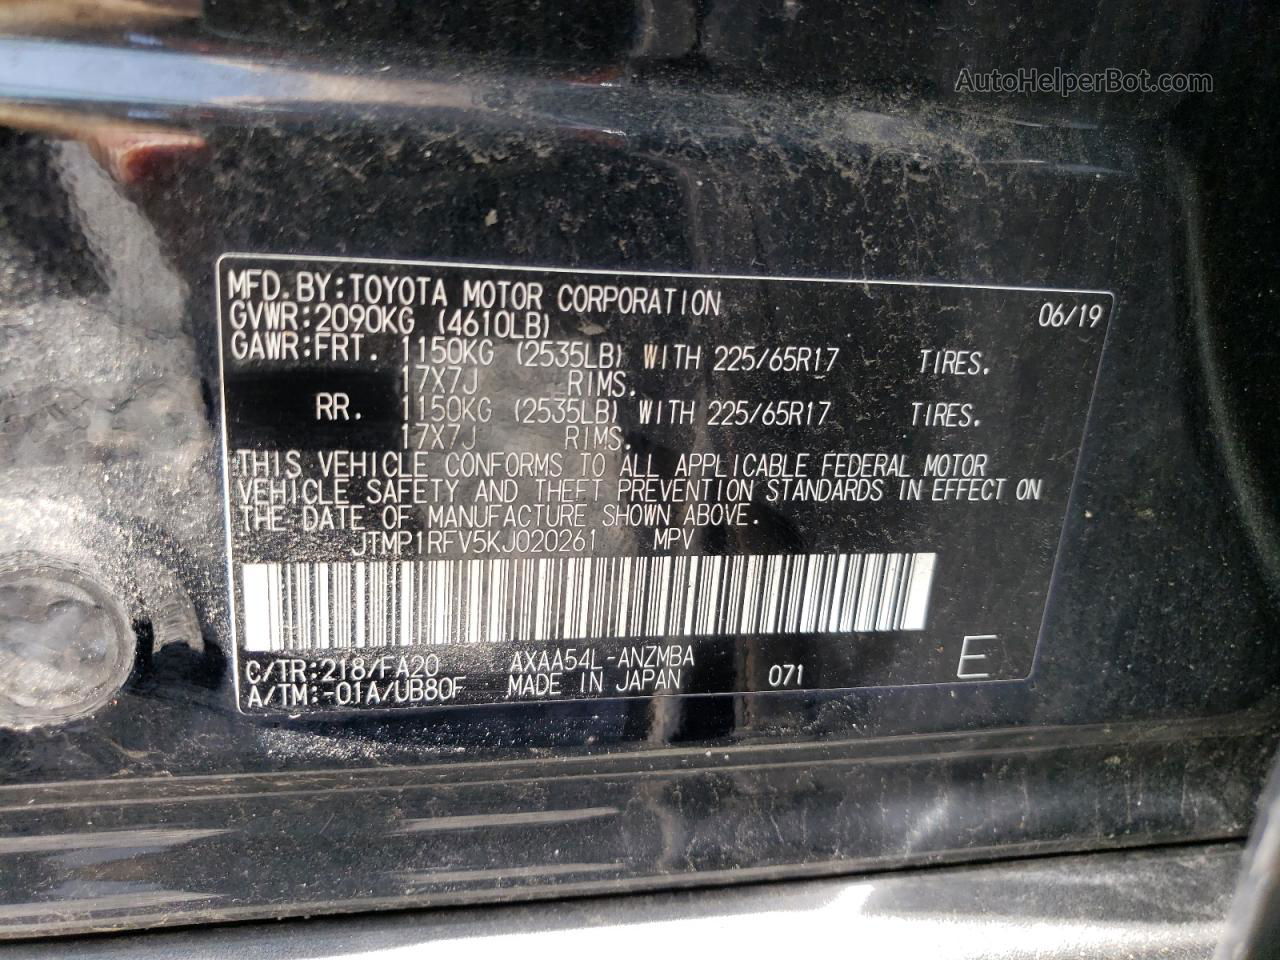 2019 Toyota Rav4 Xle Black vin: JTMP1RFV5KJ020261